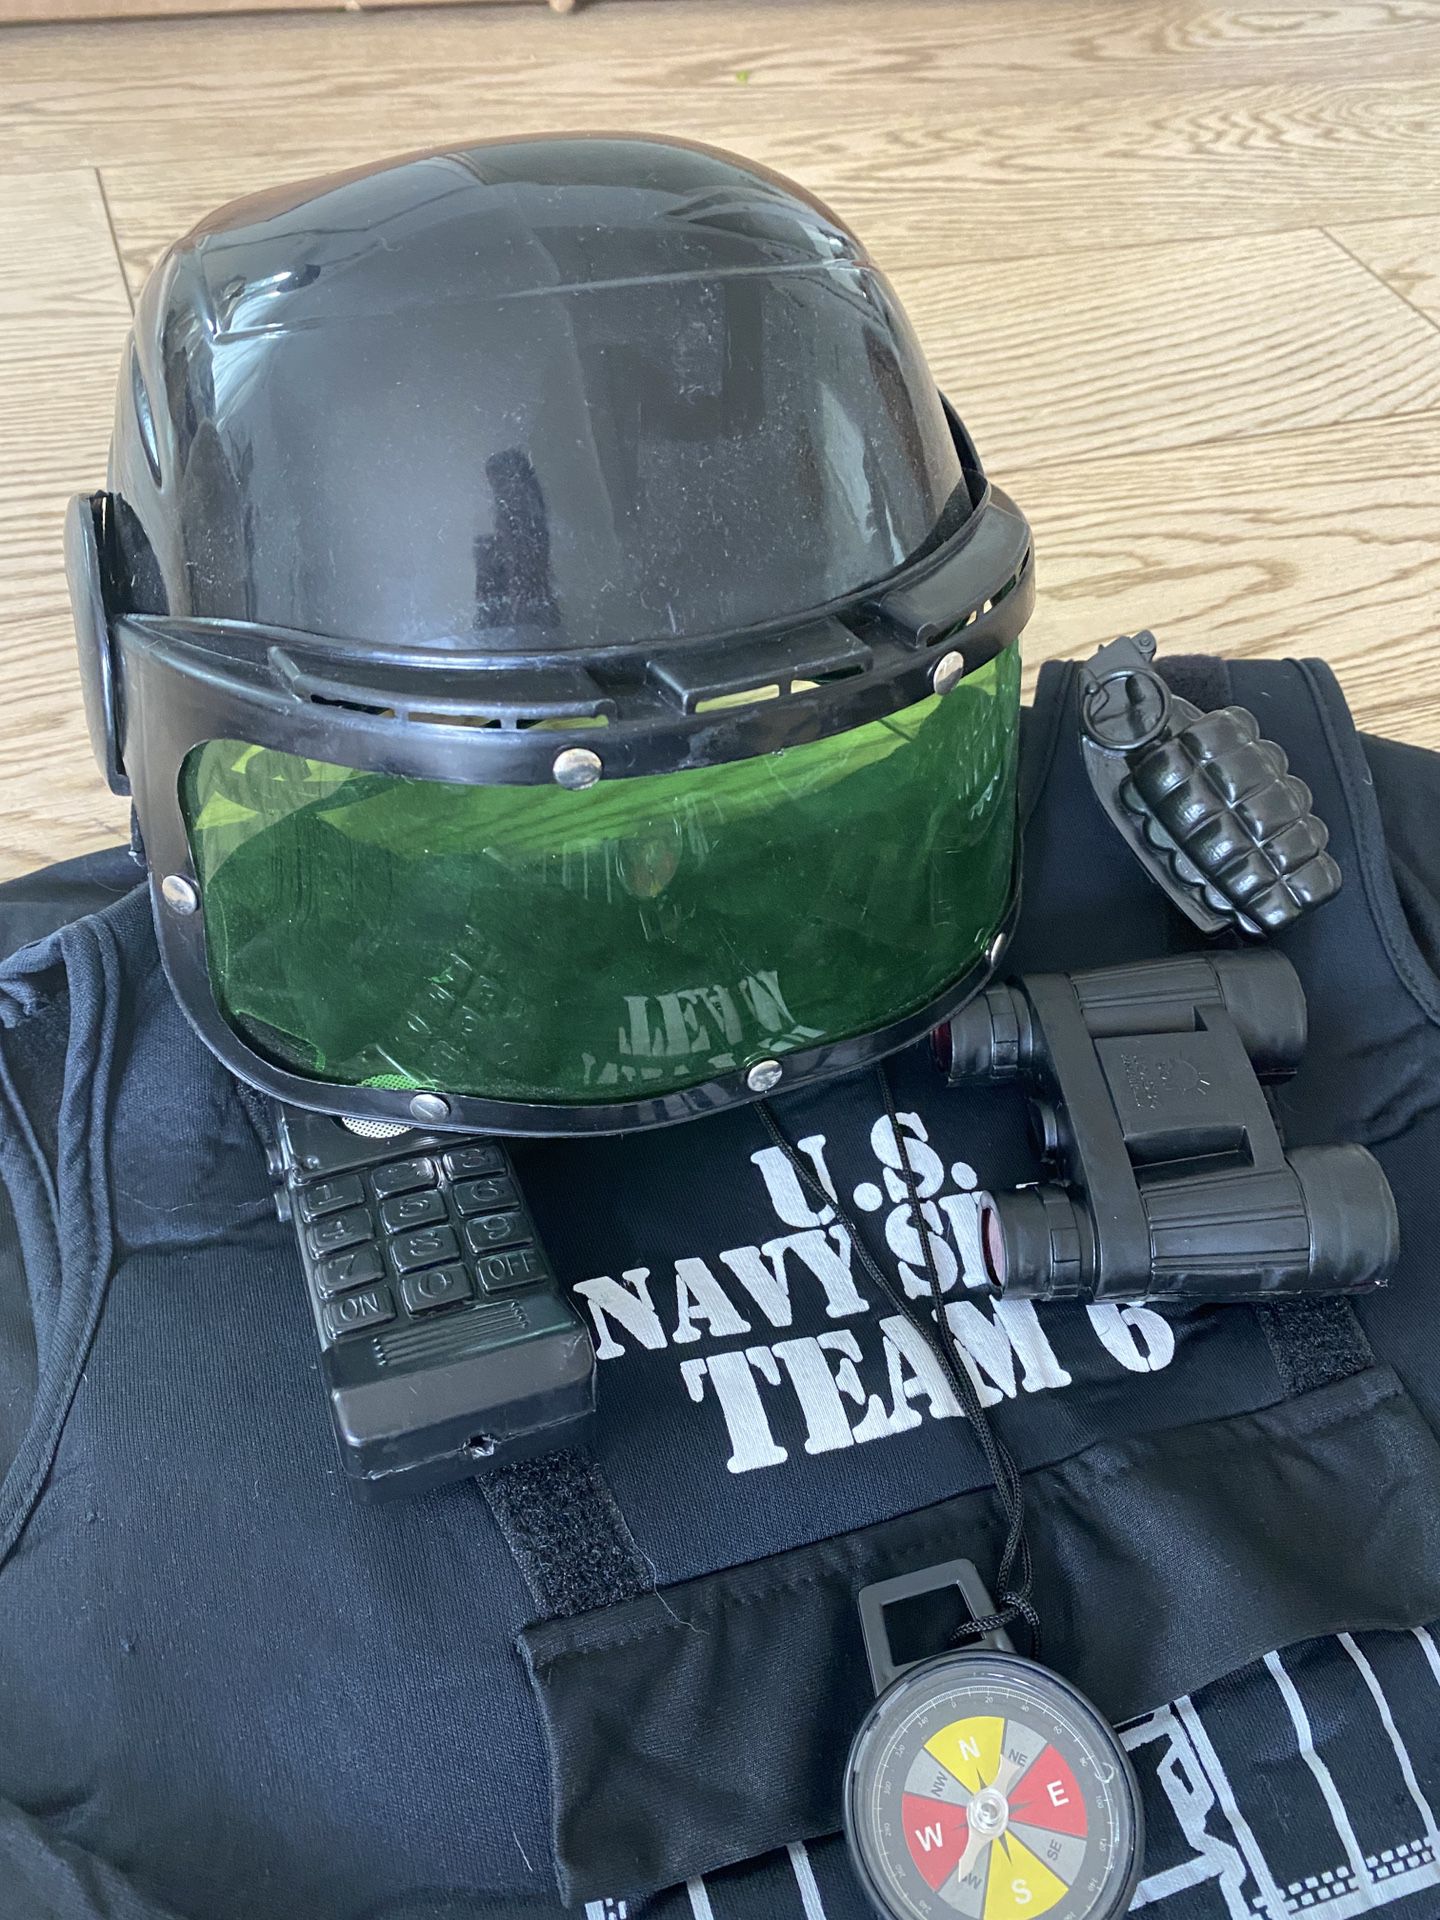 Halloween Swat Vest With Velcro Accessories And Helmet